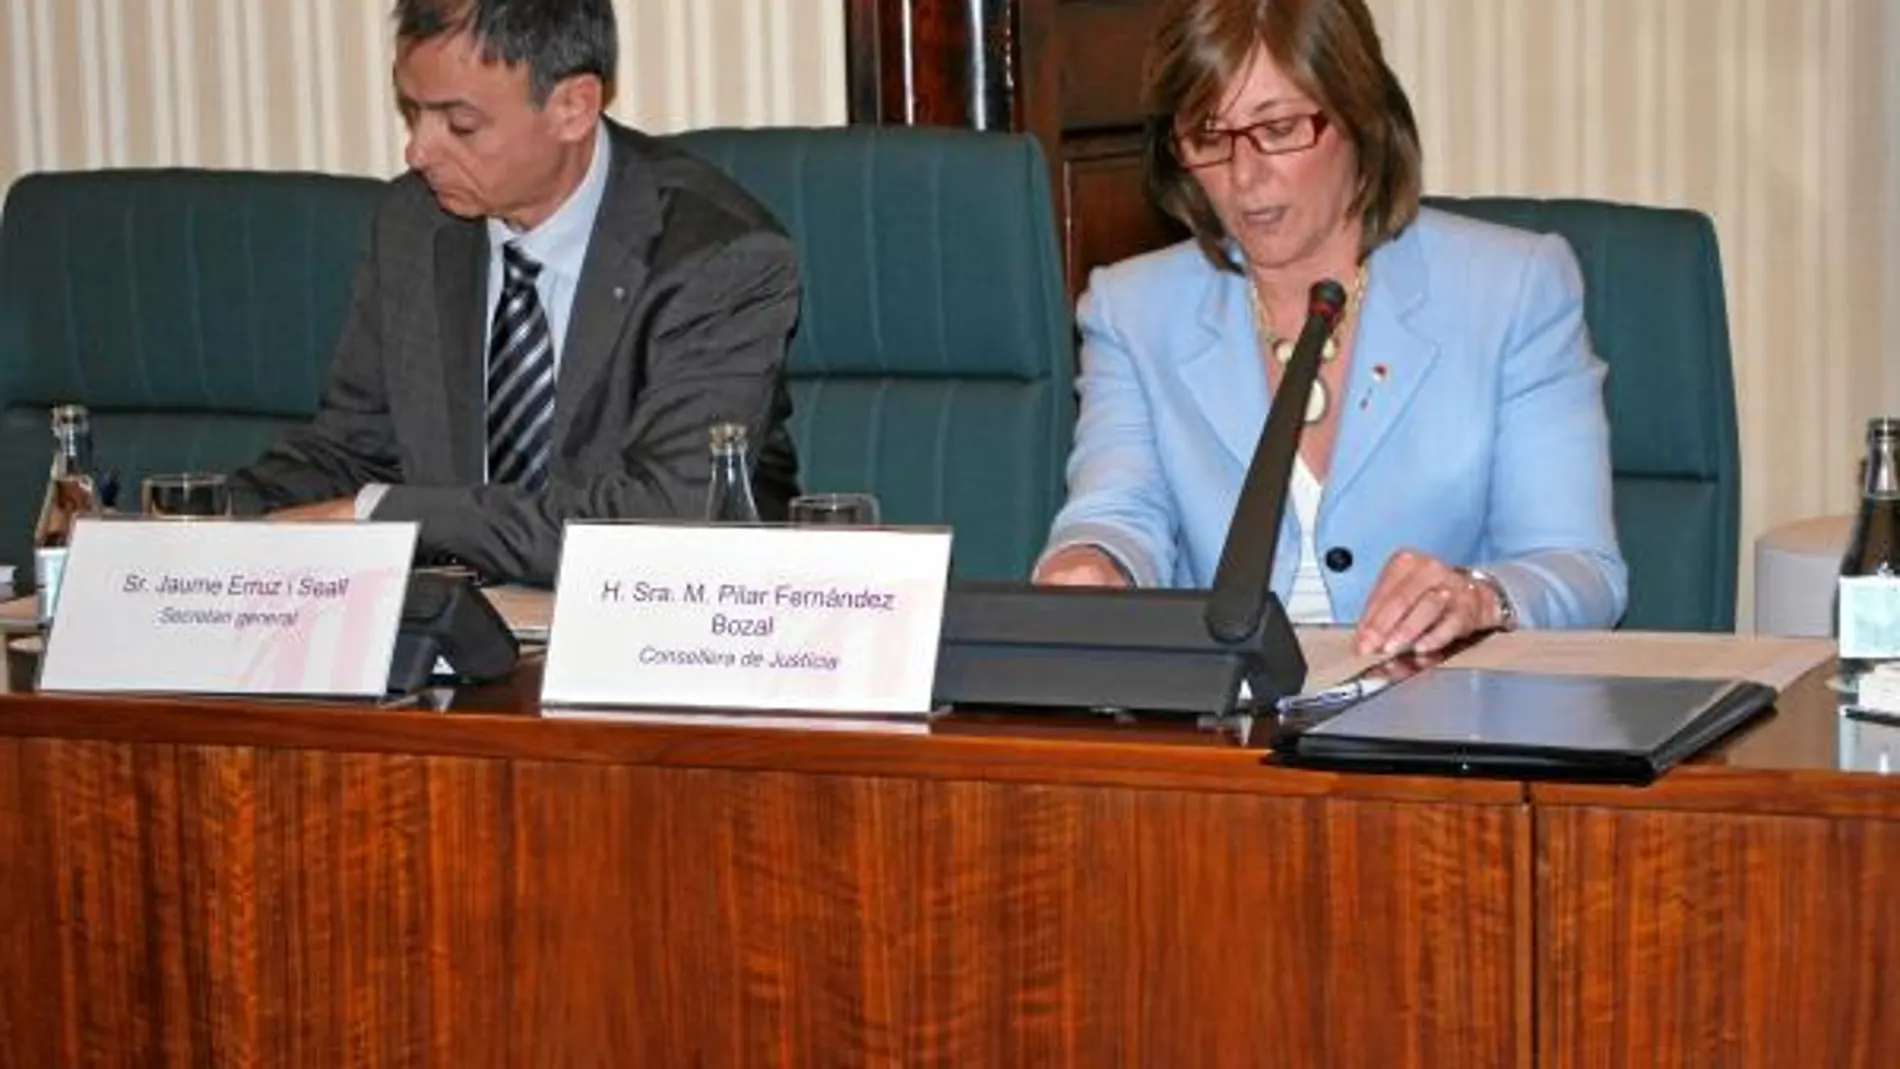 La consellera de Justicia, Pilar Fernández Bozal presentó sus proyectos en el Parlament